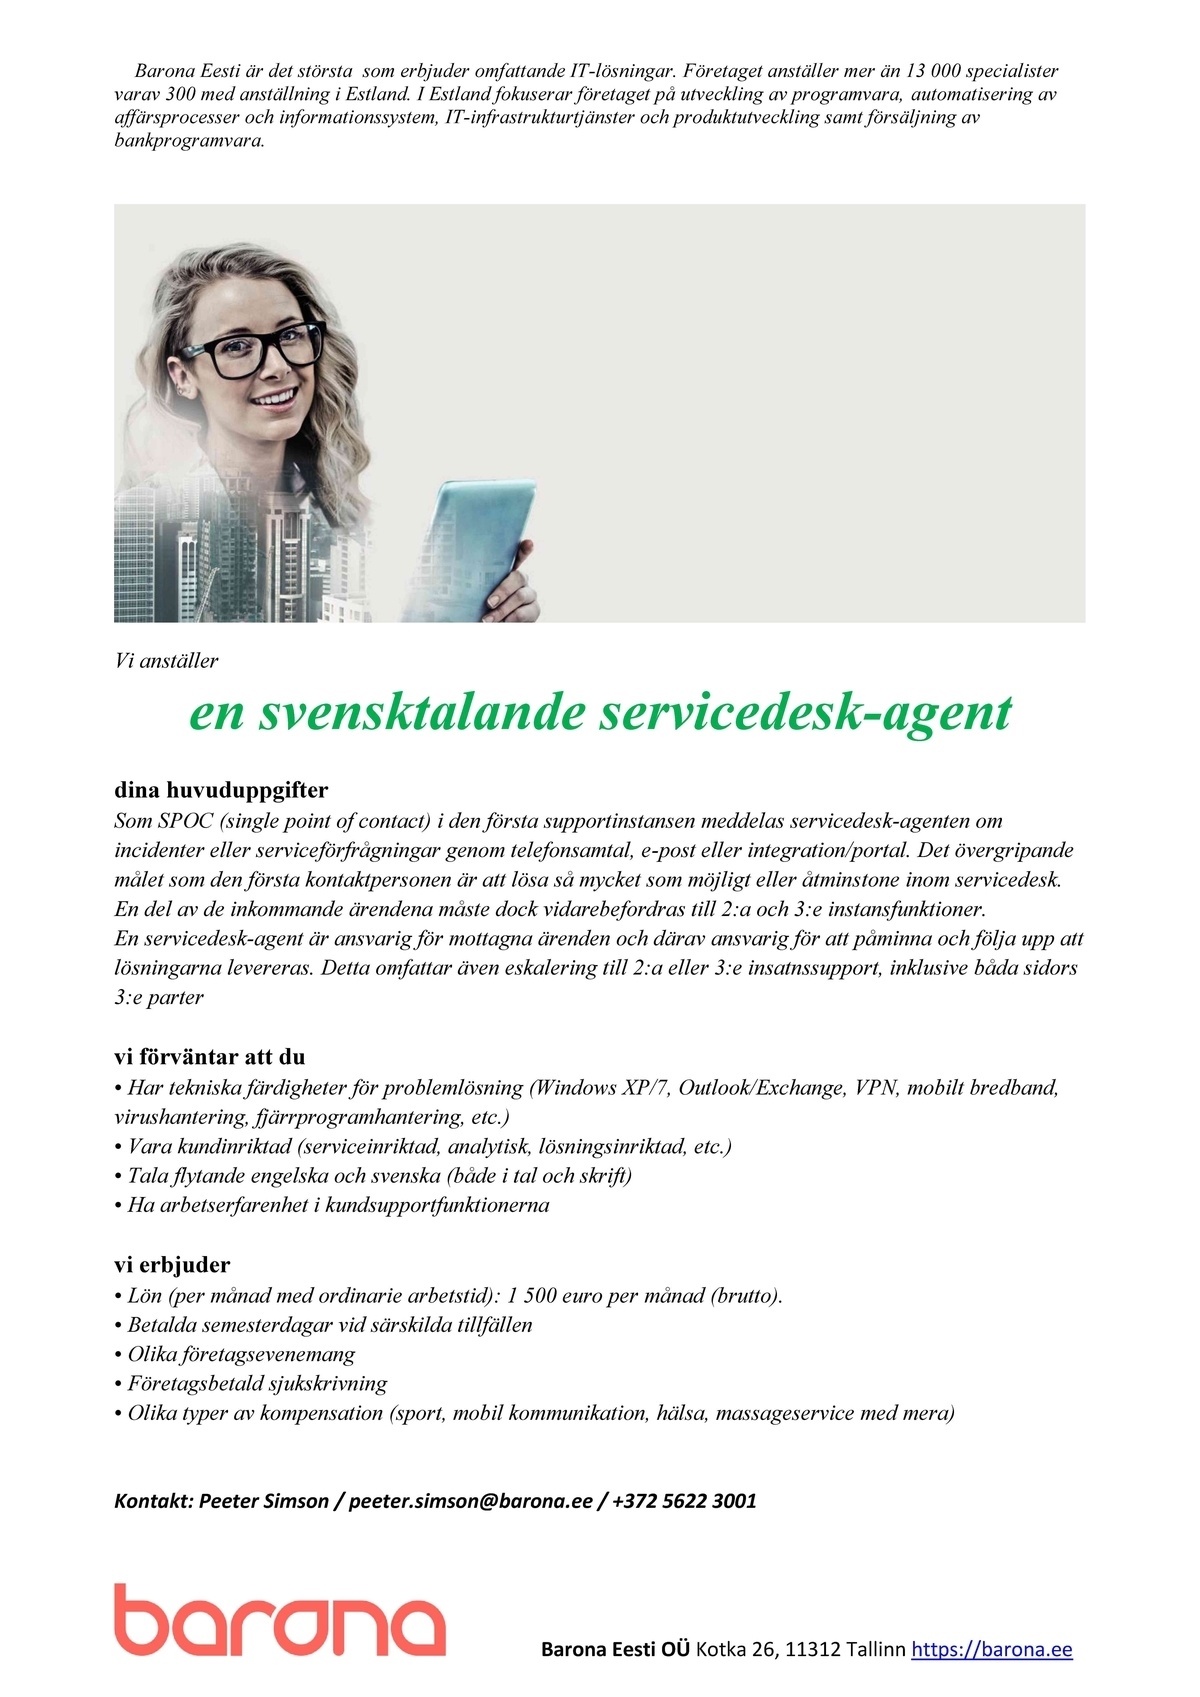 Barona Eesti OÜ Vi anställer en svensktalande servicedesk-agent